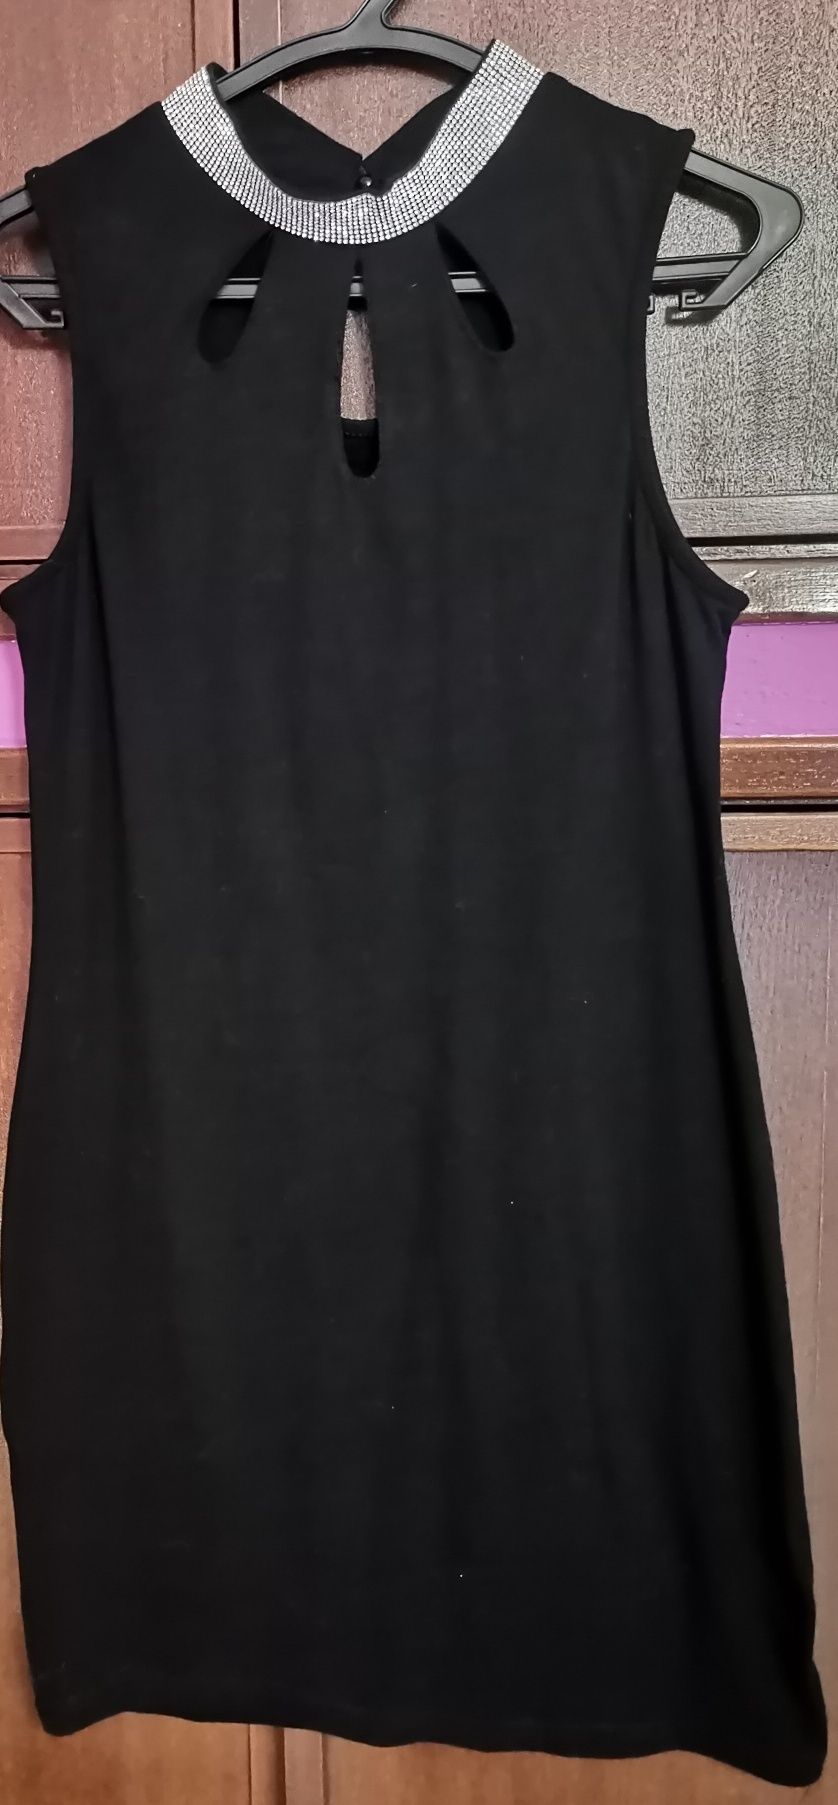 Vestido curto preto com faixa brilhante